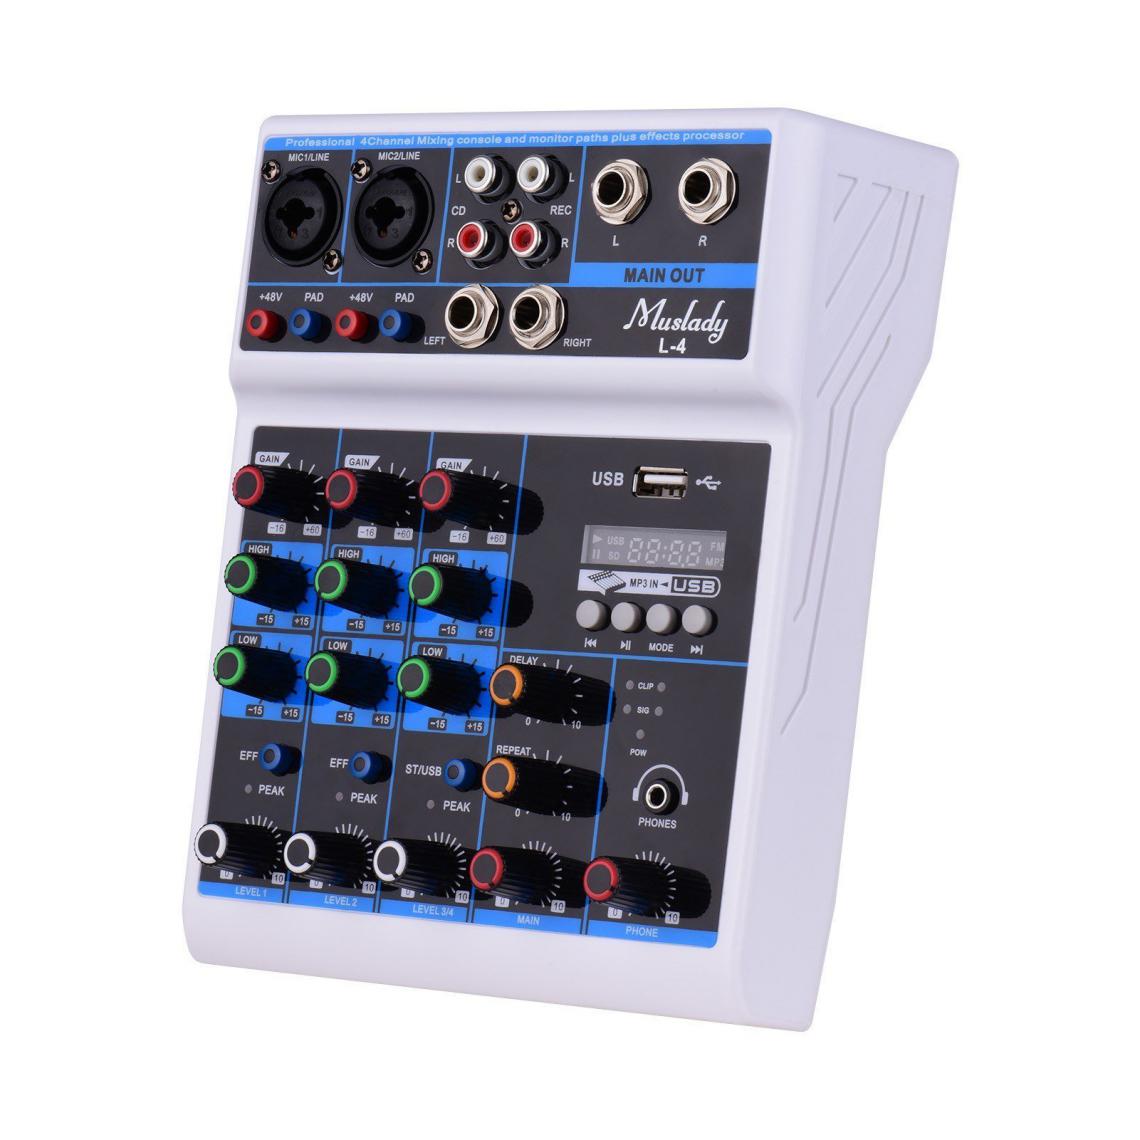 Justgreenbox - Écran LED de la console de mixage de la console de mixage audio 4 canaux - T3654657590802 - Tables de mixage